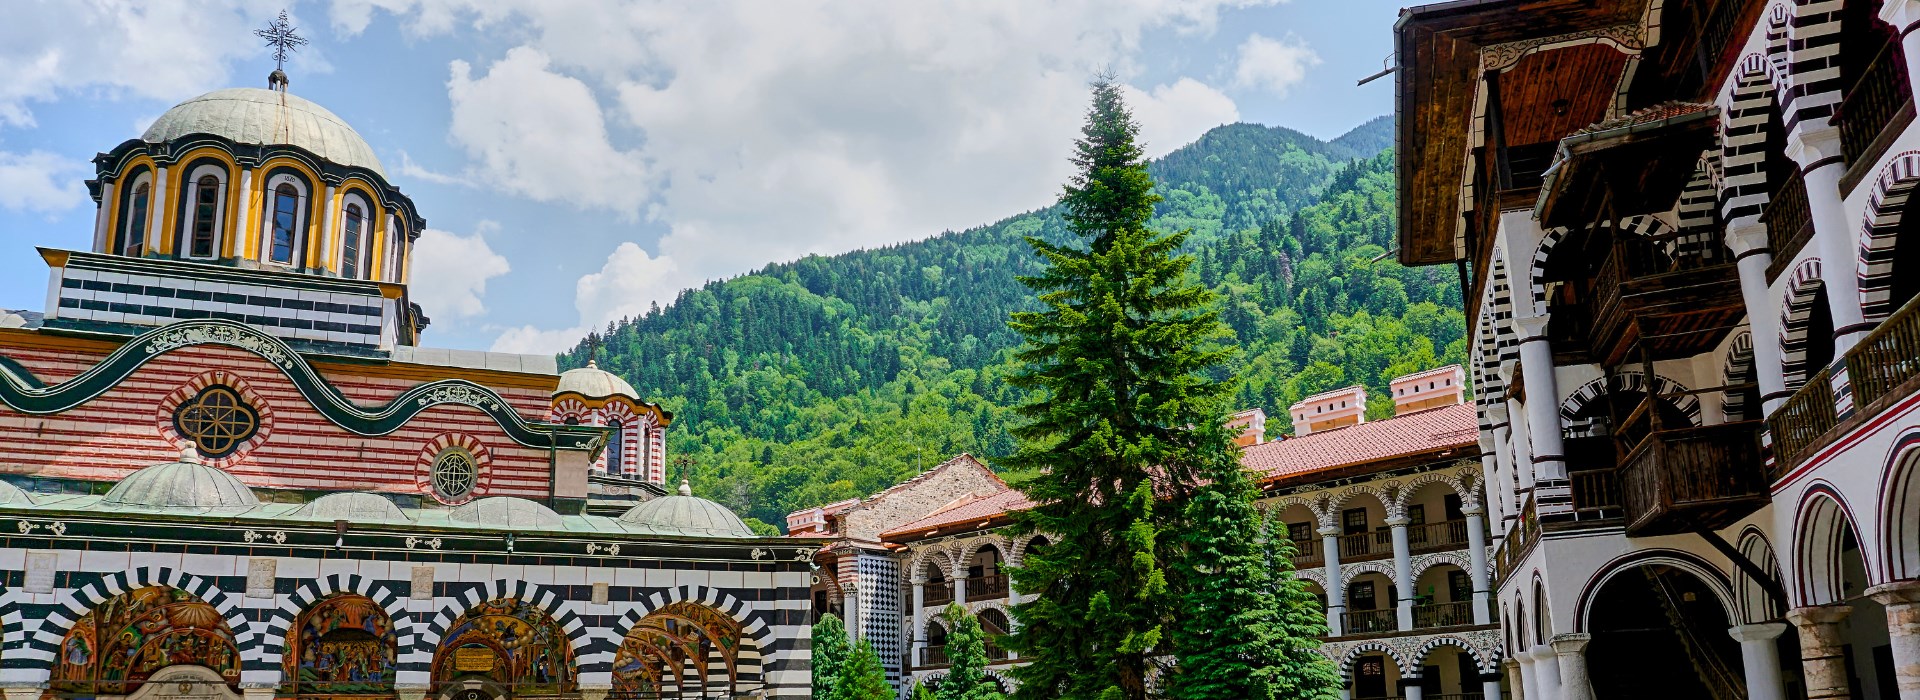 Visiter Le Monastère de Rila - Bulgarie